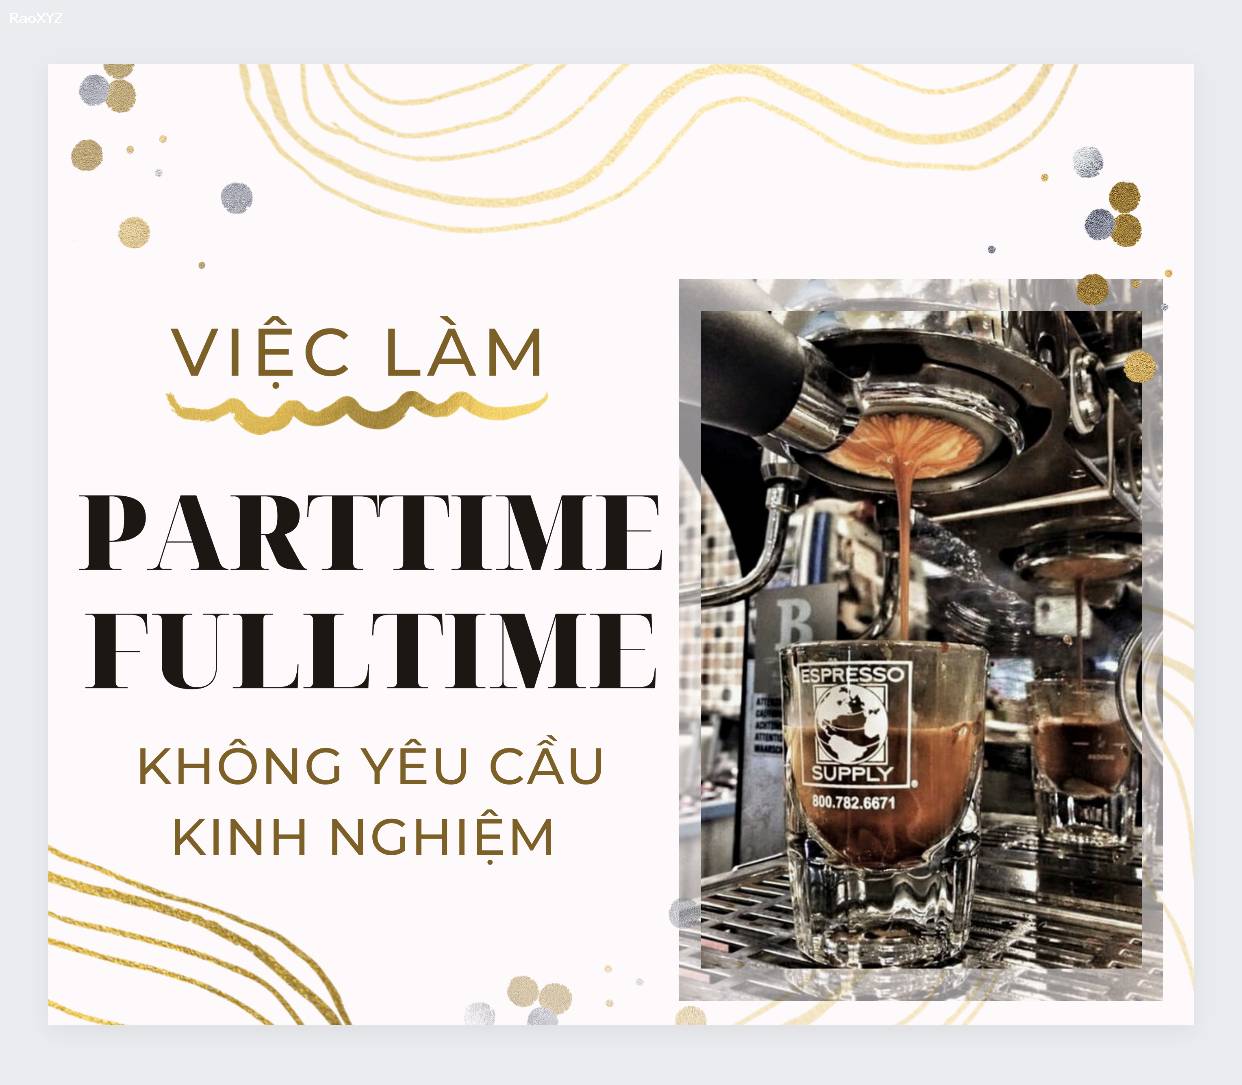 Việc làm bán coffe parttime - fulltime cho chi nhánh quận Gò Vấp